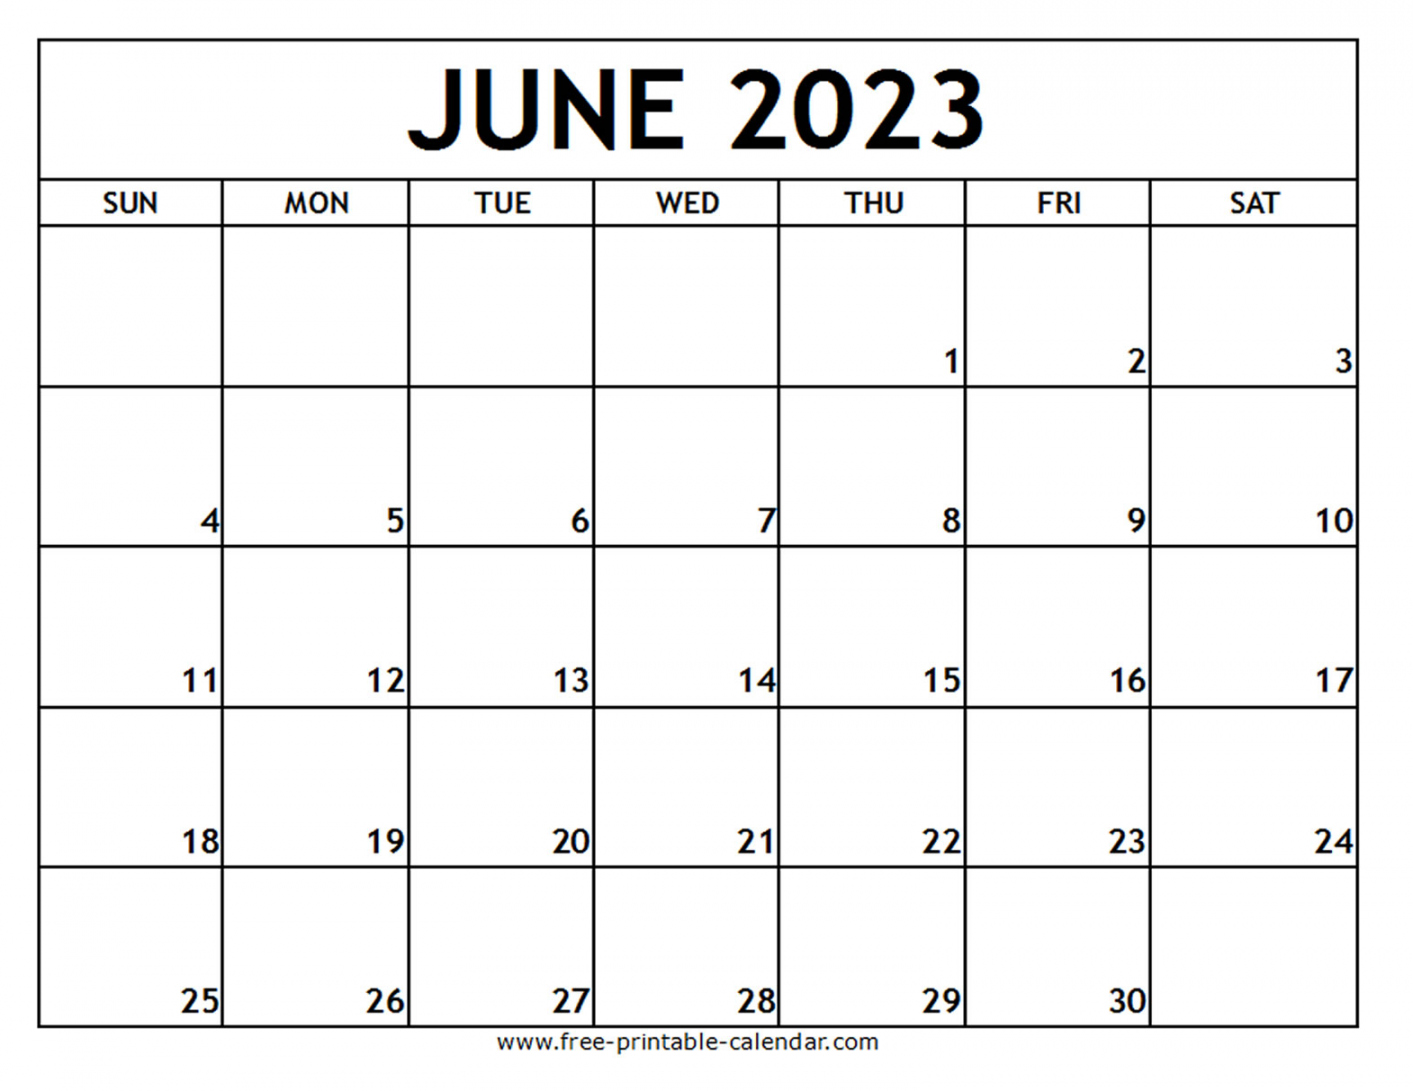 Free Printable Calendar June 2023 - Printable - June  Printable Calendar - Free-printable-calendar